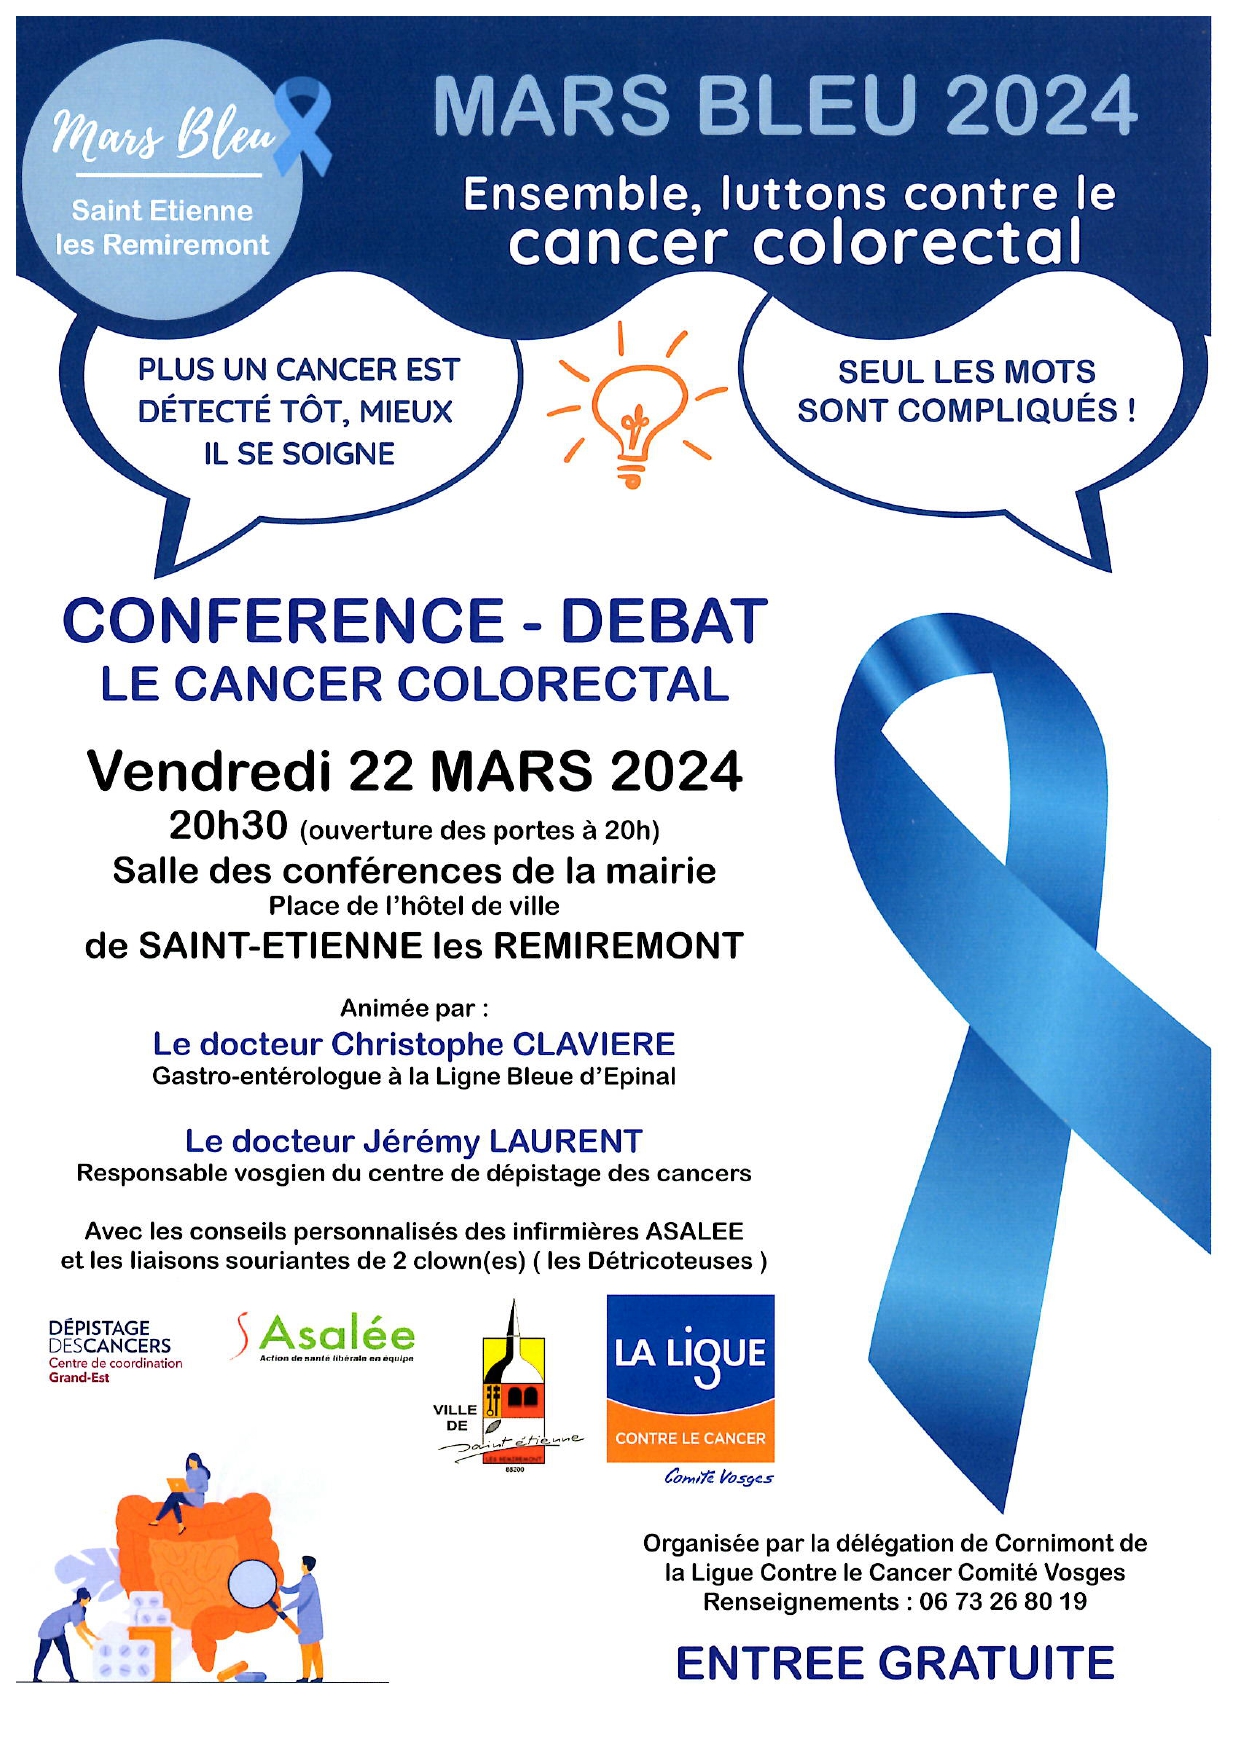 Conférence-débat : LE CANCER COLORECTAL